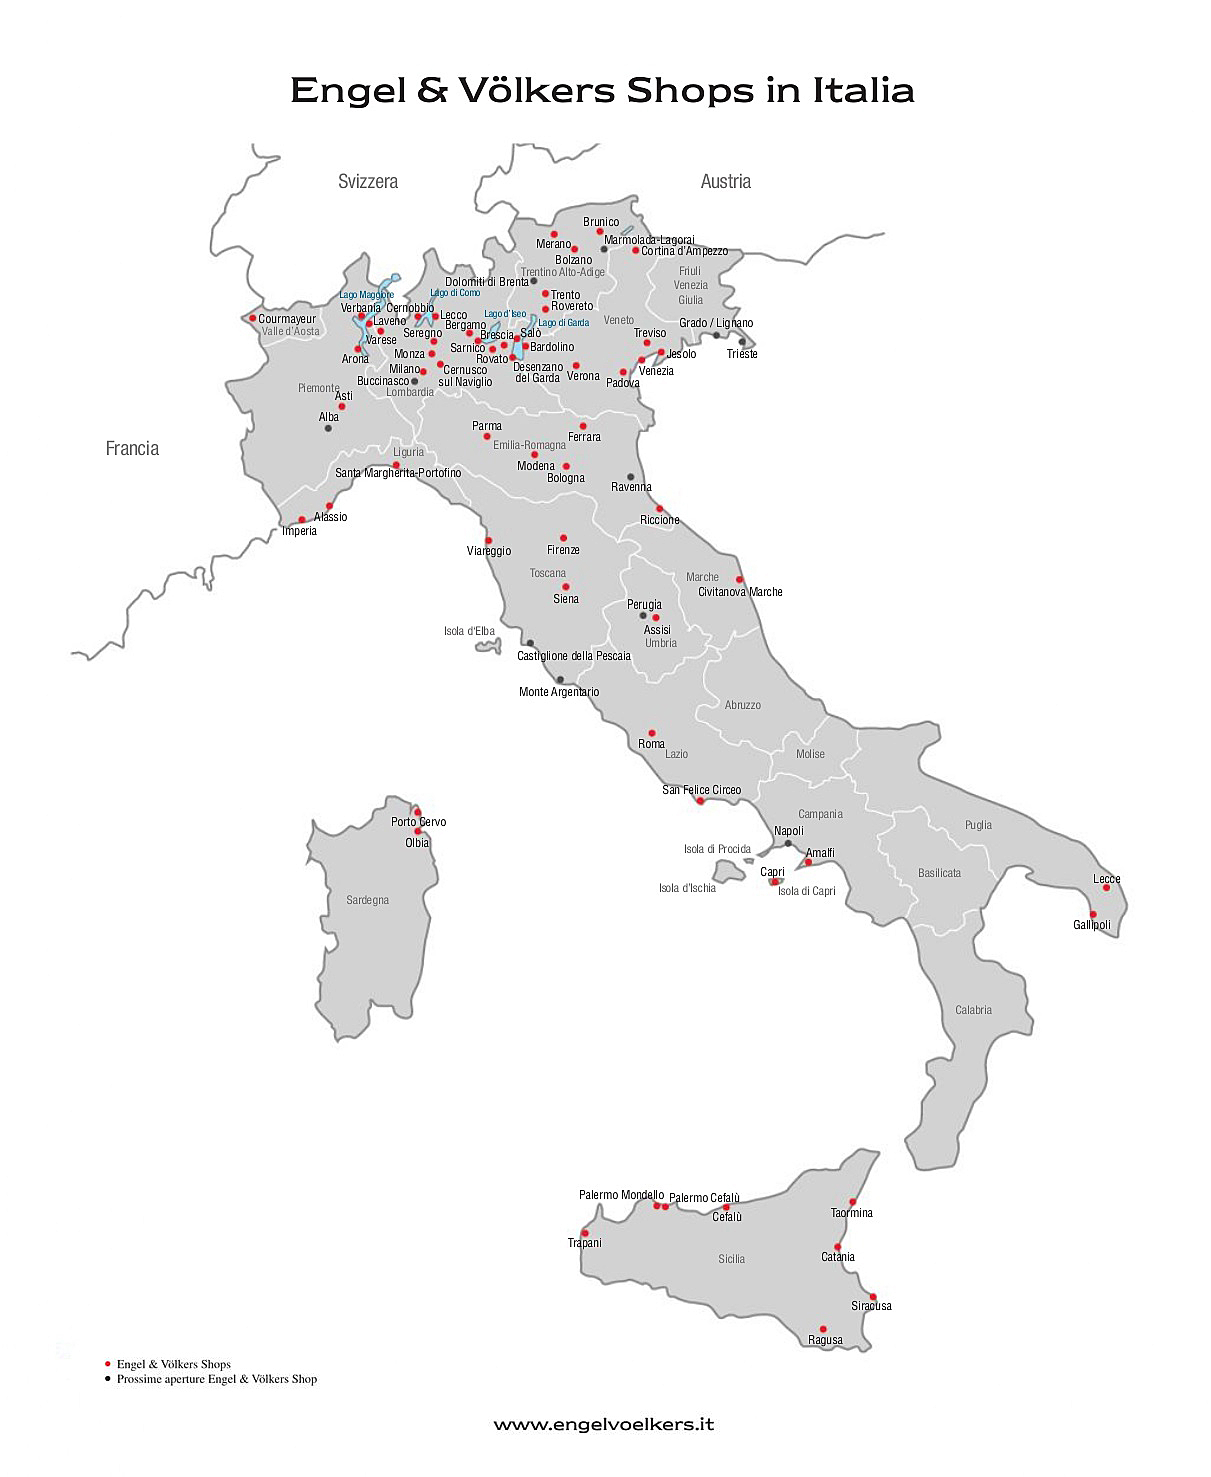  Milano
- Mappa Italia 2019.jpg